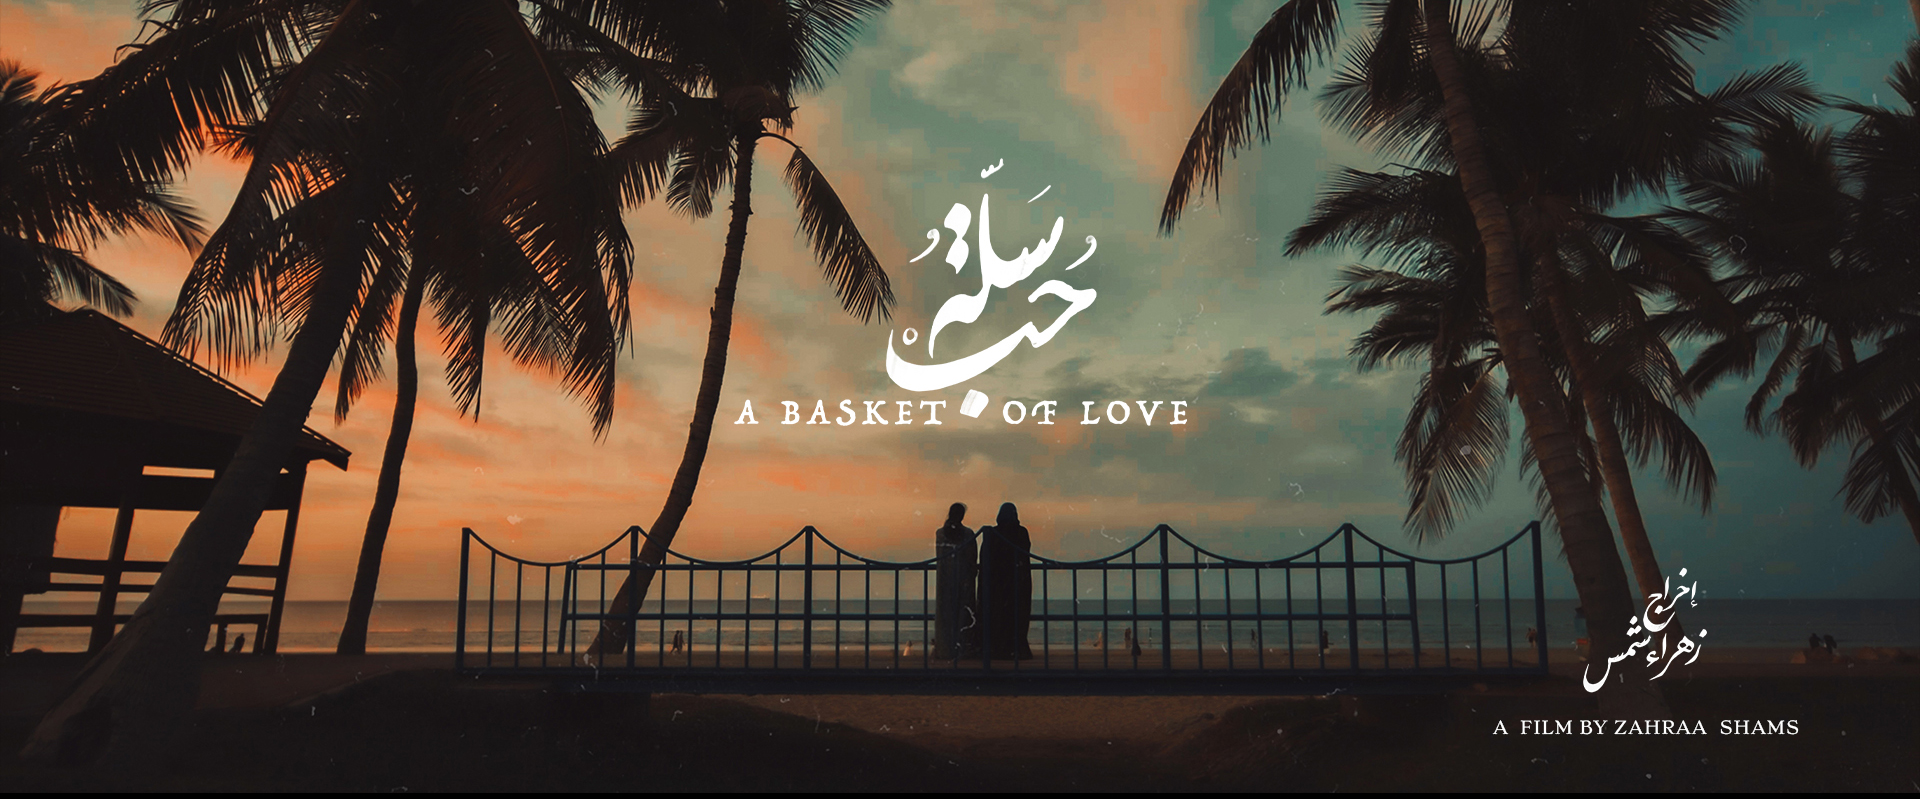 A Basket of Love Film Still